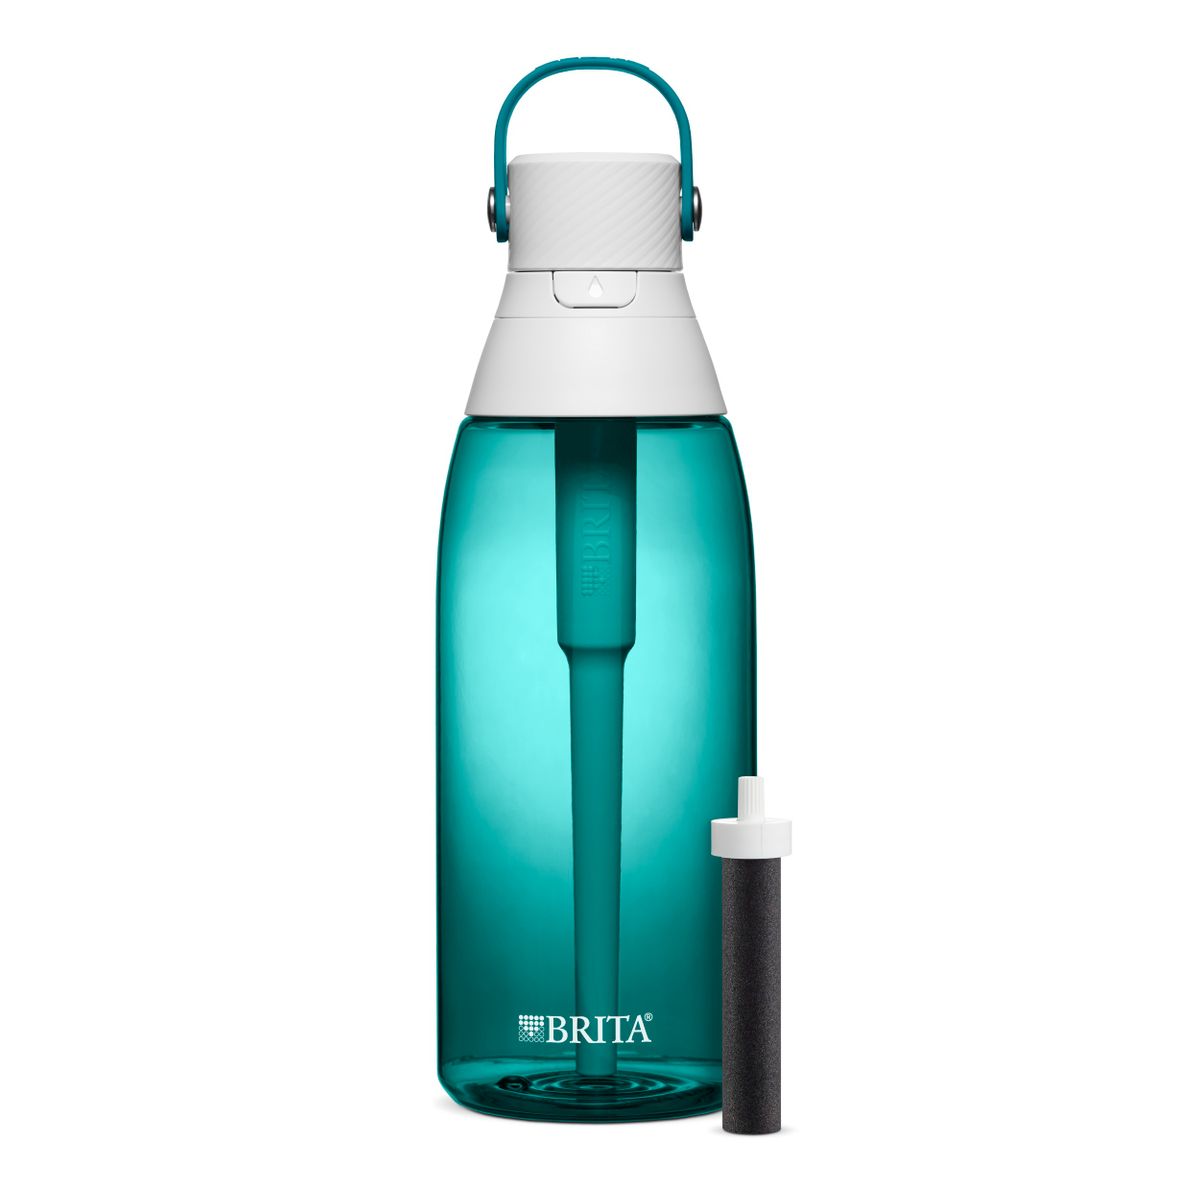 [RDY] [送料無料] Brita 36oz プレミアムウォーターボトル フィルター付き BPAフリー シーグラス [楽天海外通販] | Brita 36oz Premium Water Bottle with Filter, BPA Free, Sea Glass